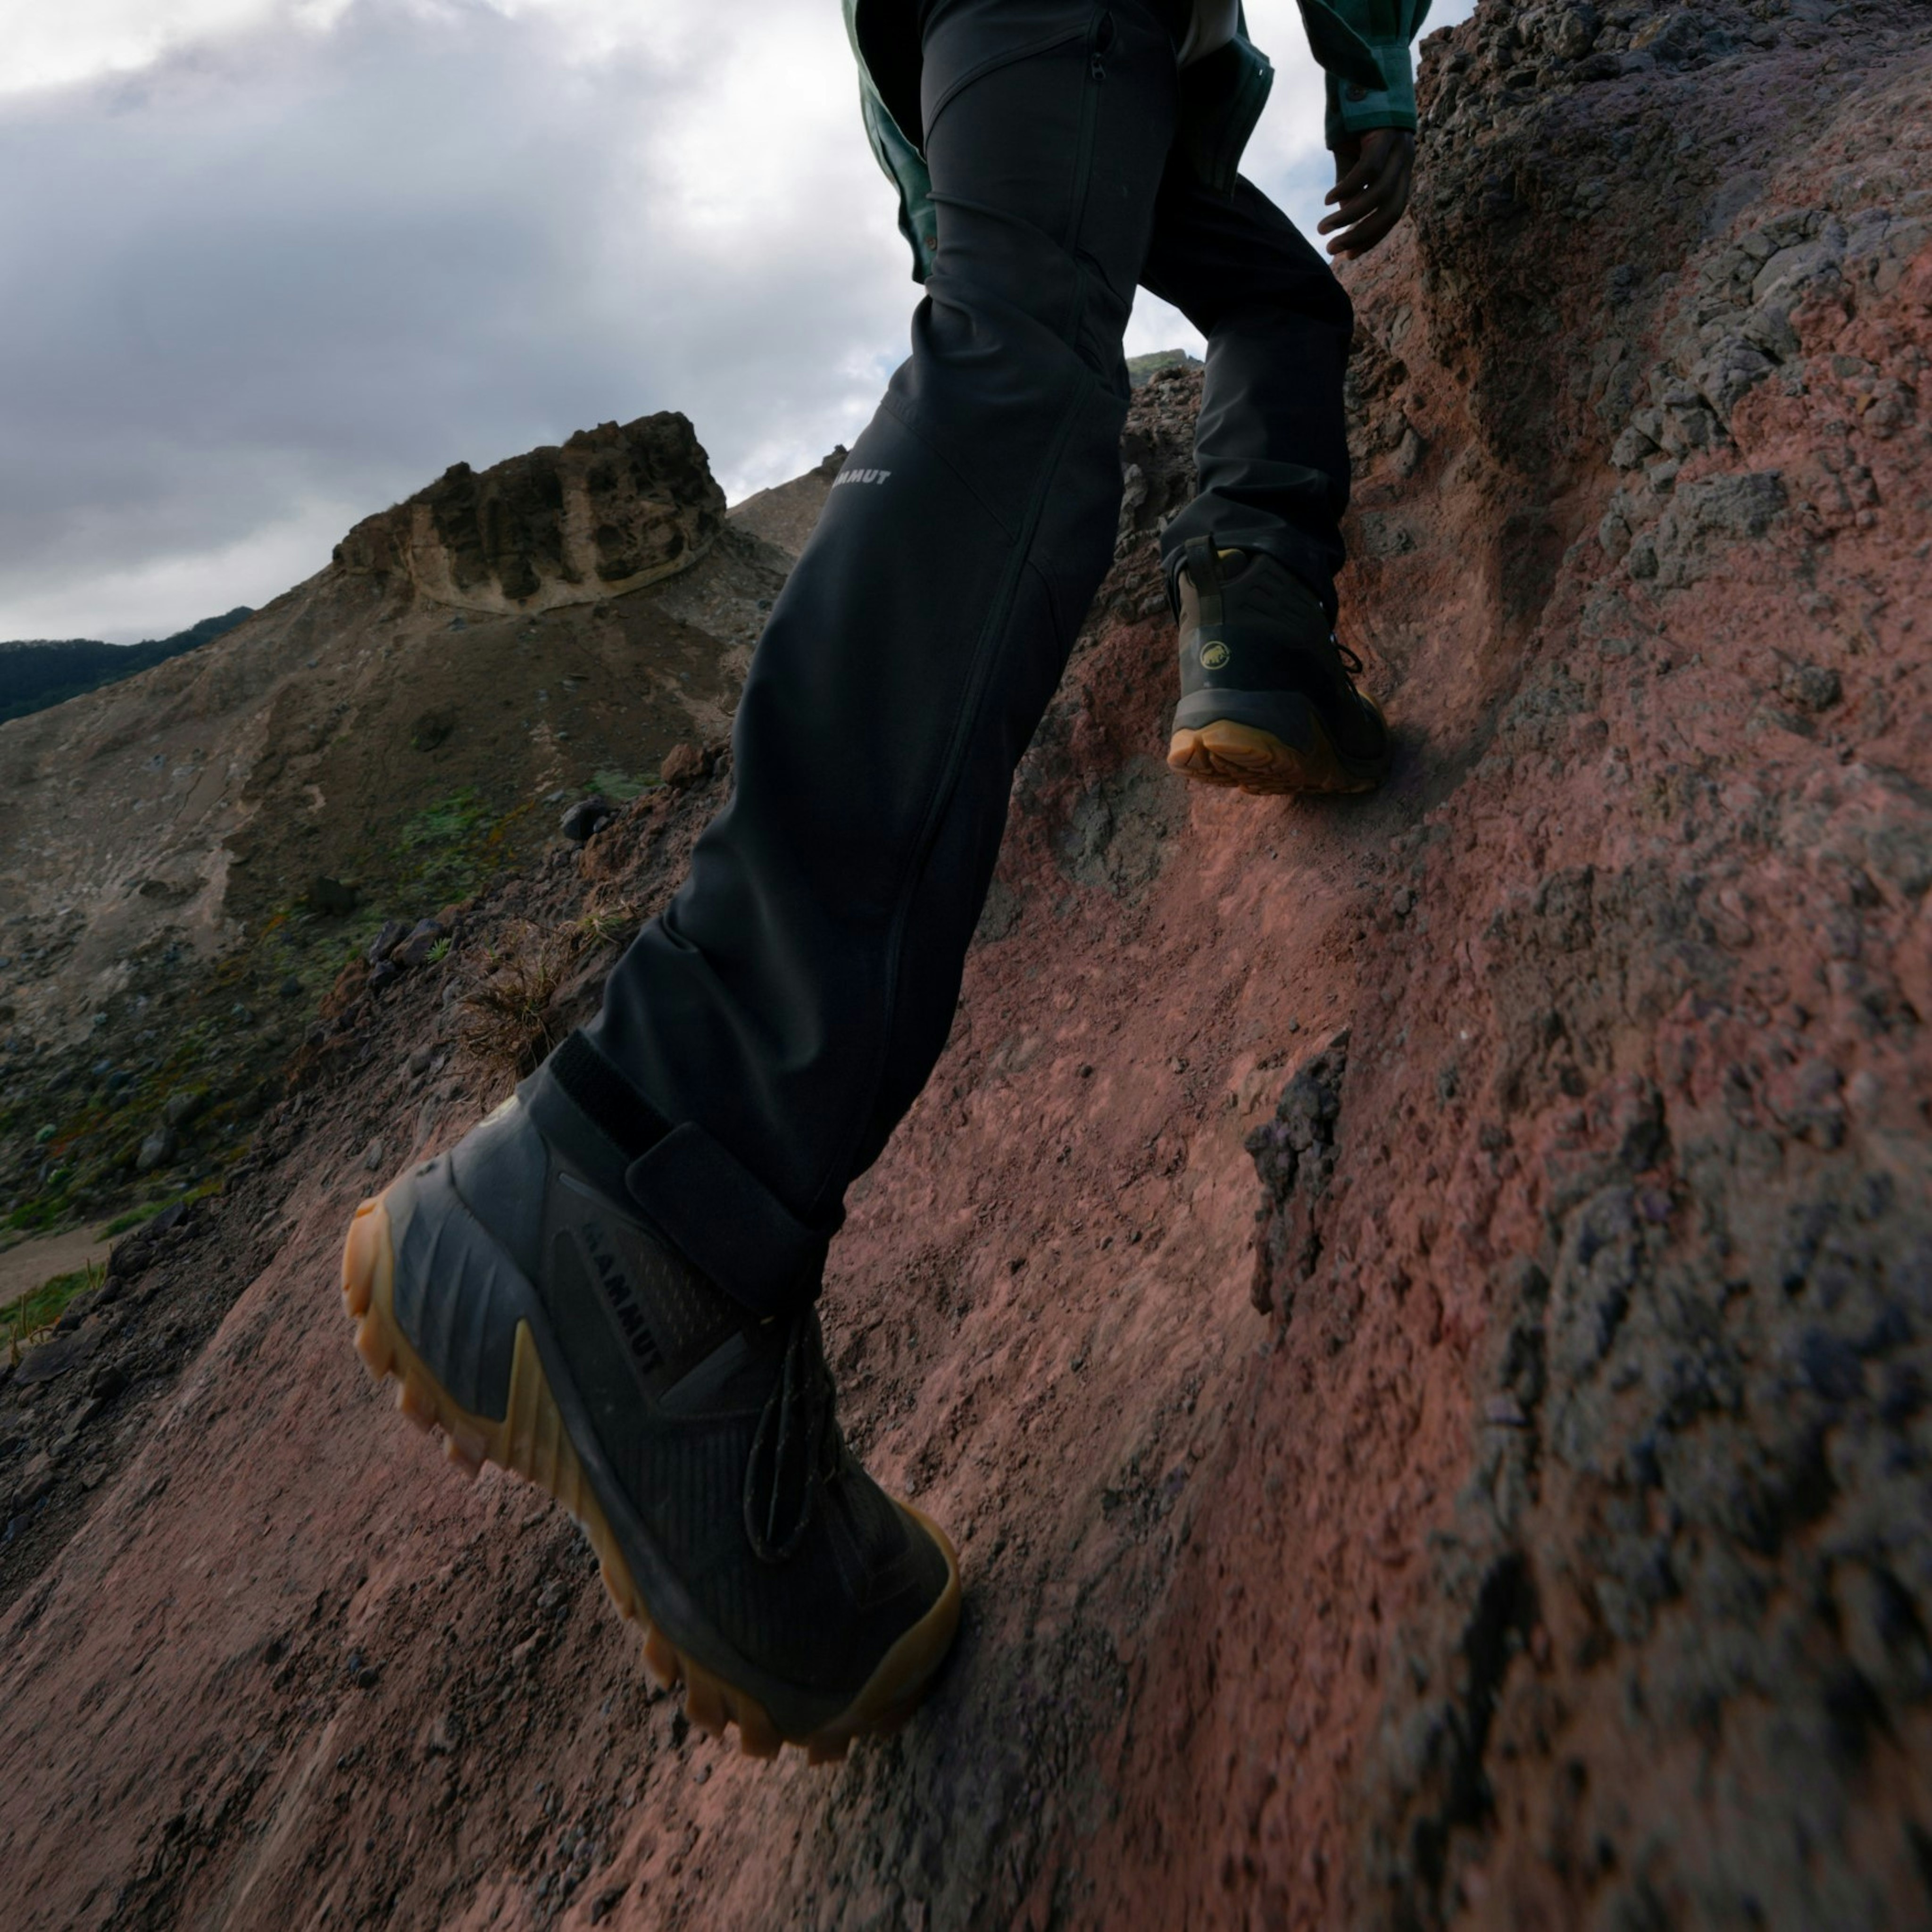 Mammut Ducan High GTX Hiking Boots - Men's